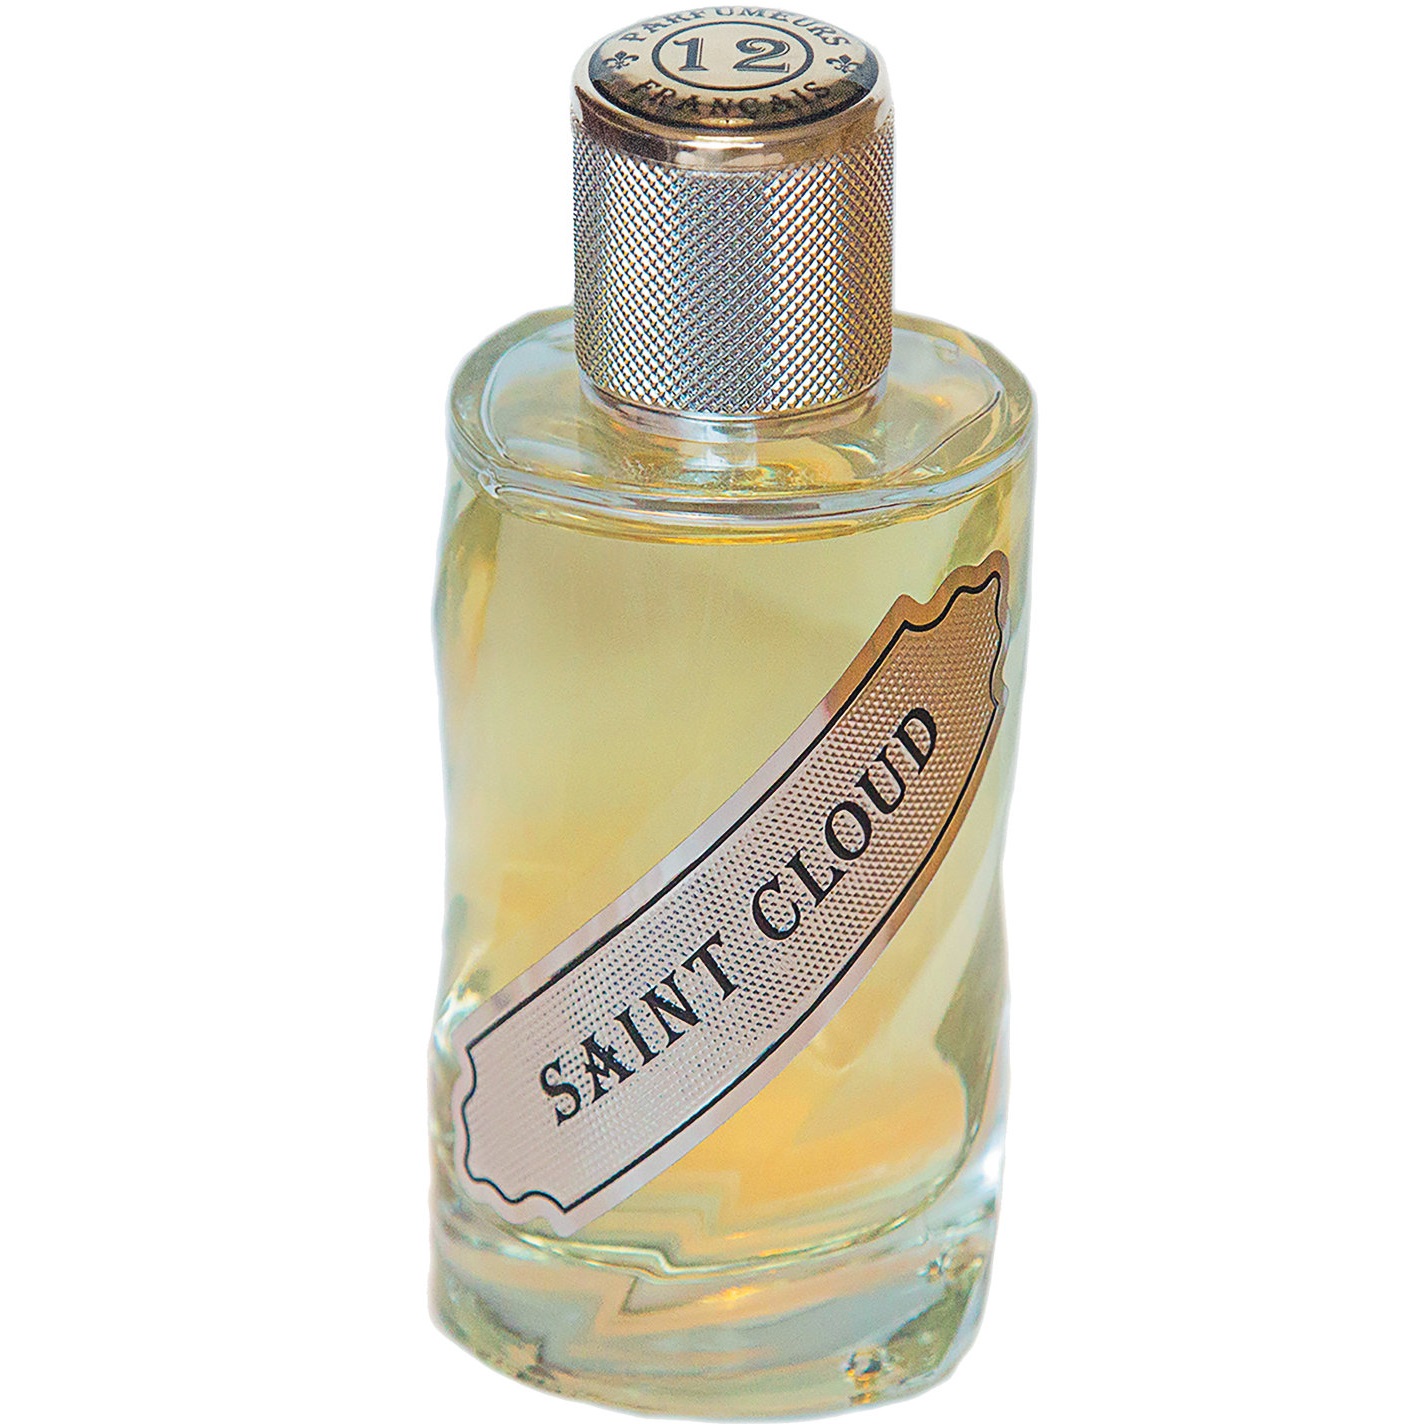 12 Parfumeurs Francais - Saint Cloud (30мл)